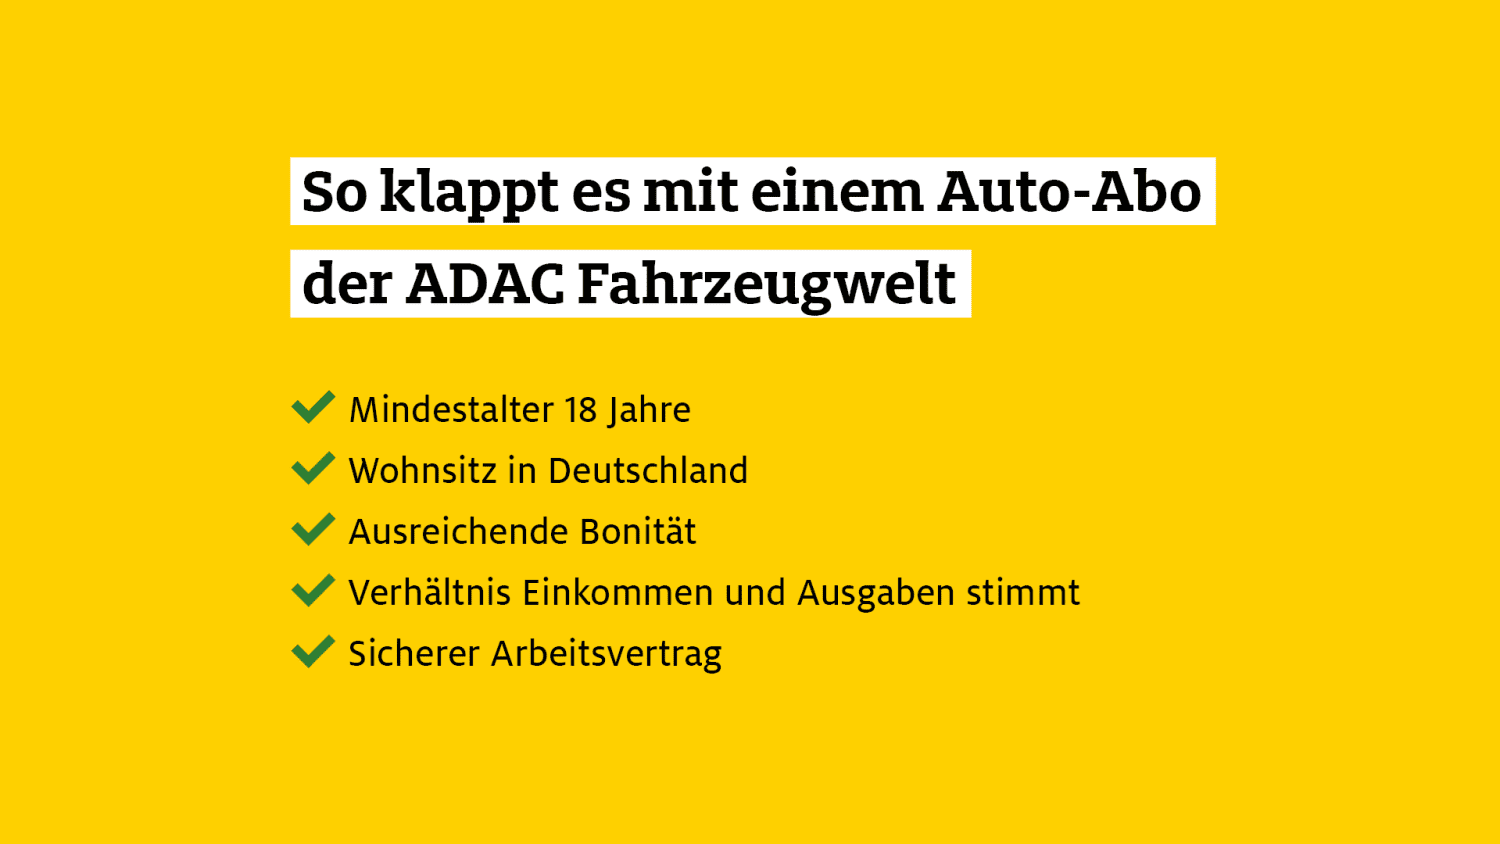 ADAC Fahrzeugwelt nun auch mit Auto-Abo